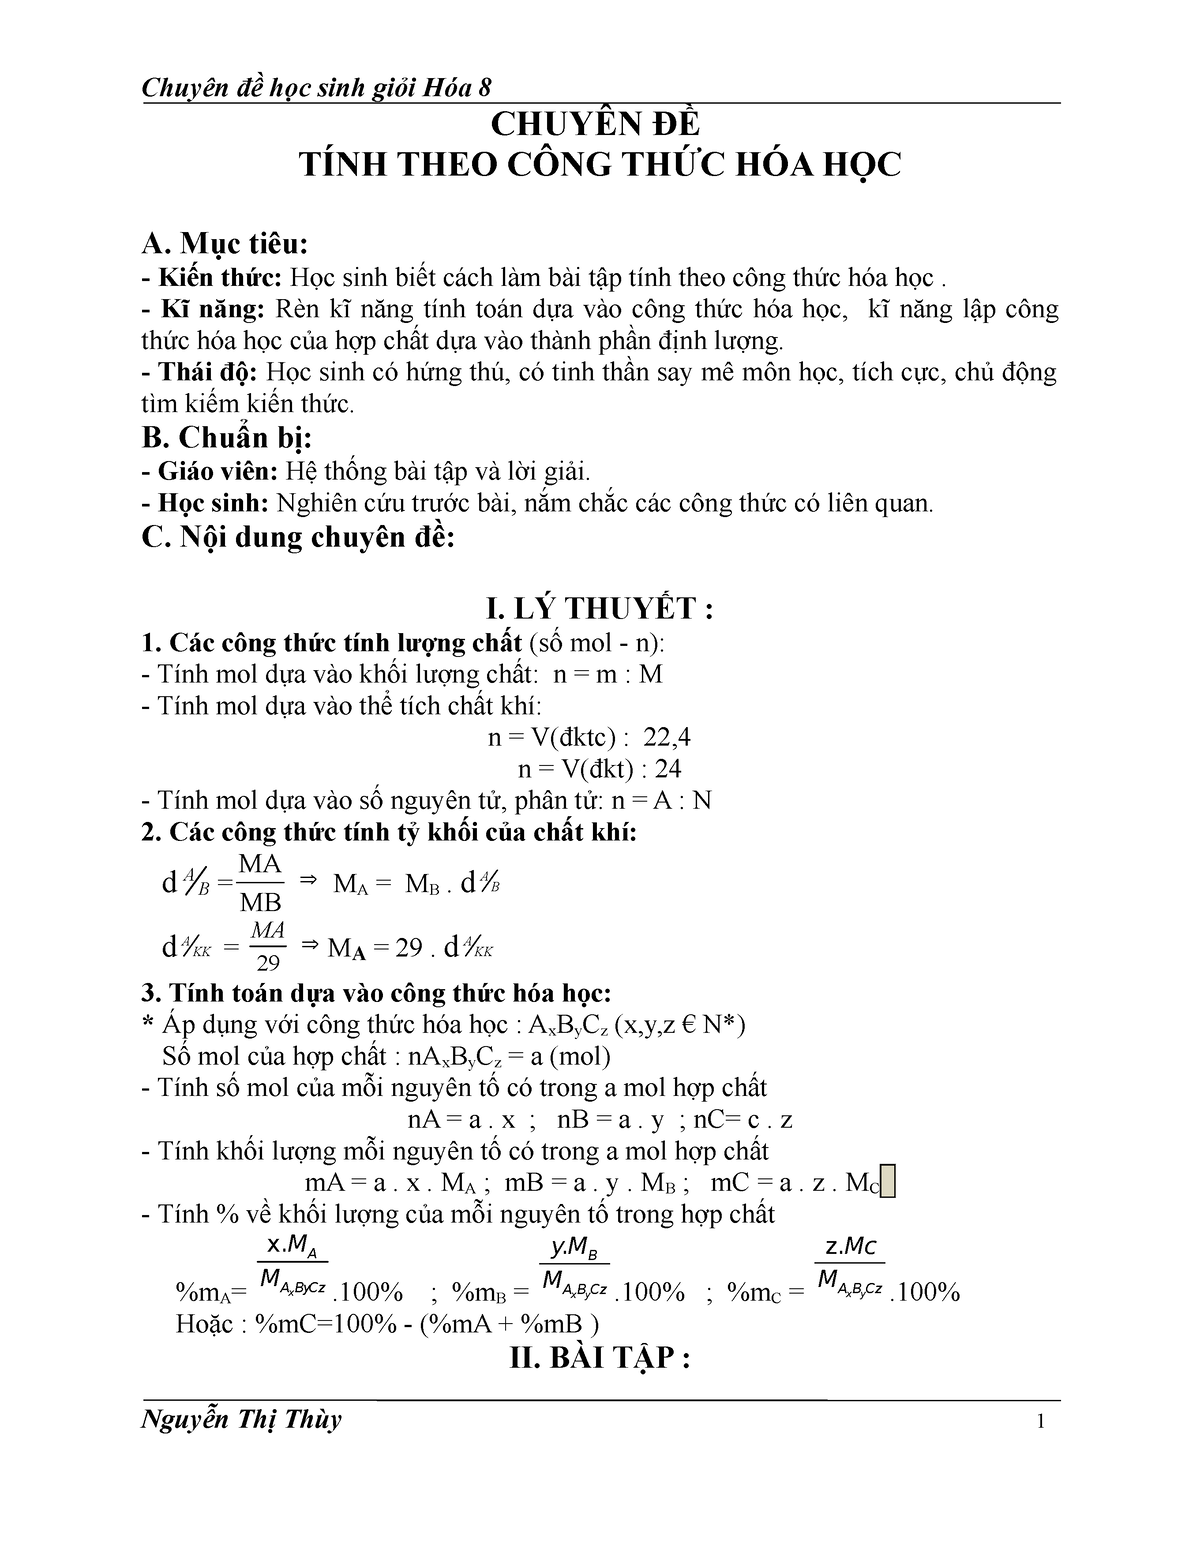 1001 bài tập về tính theo công thức hóa học thực hành cùng với giải đáp chi tiết